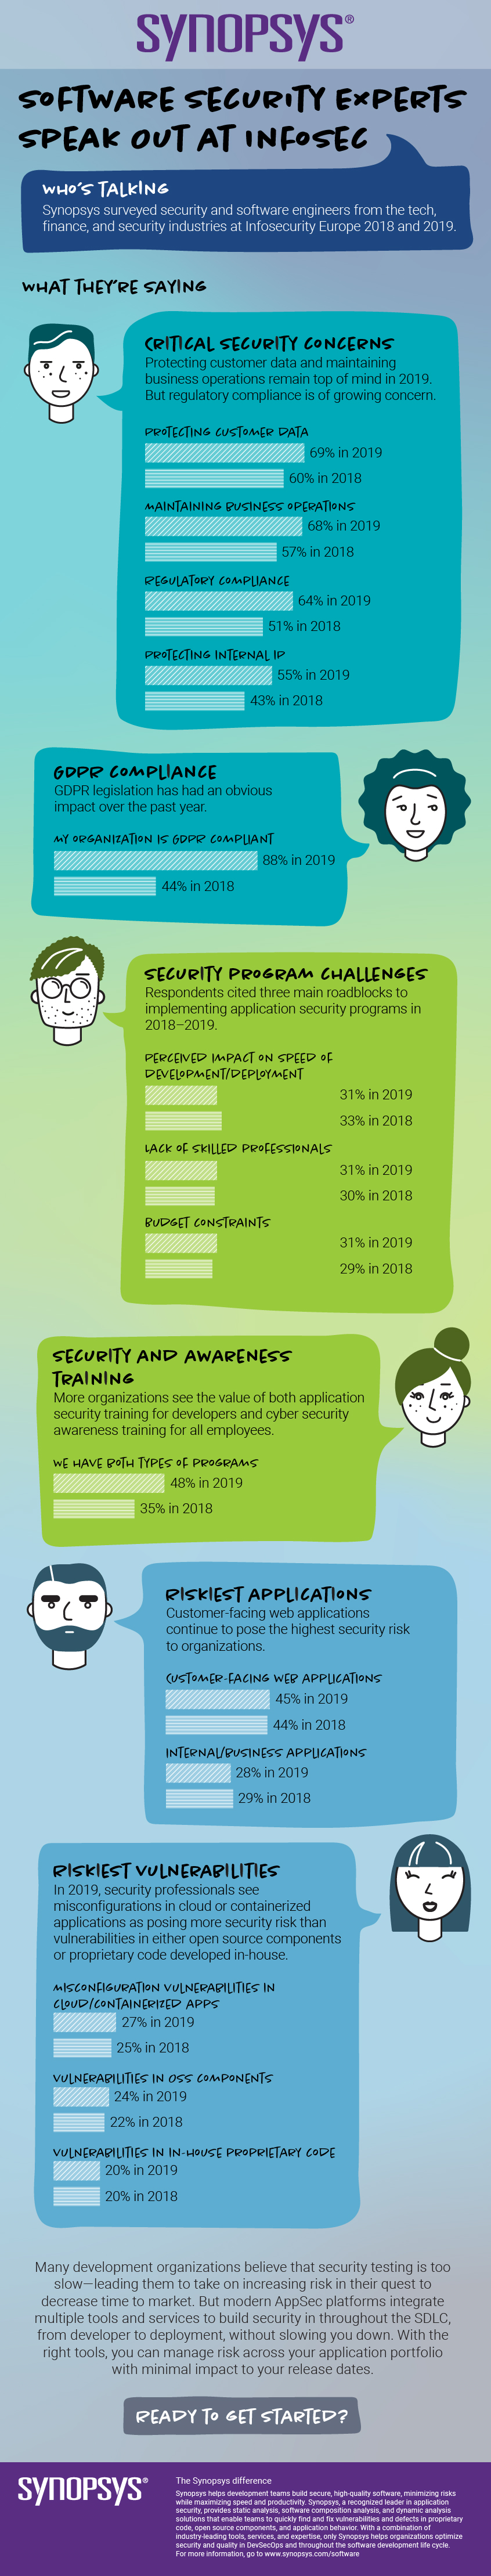 Infosec Europe 2019でのソフトウェア・セキュリティの動向に関するエキスパートの意見